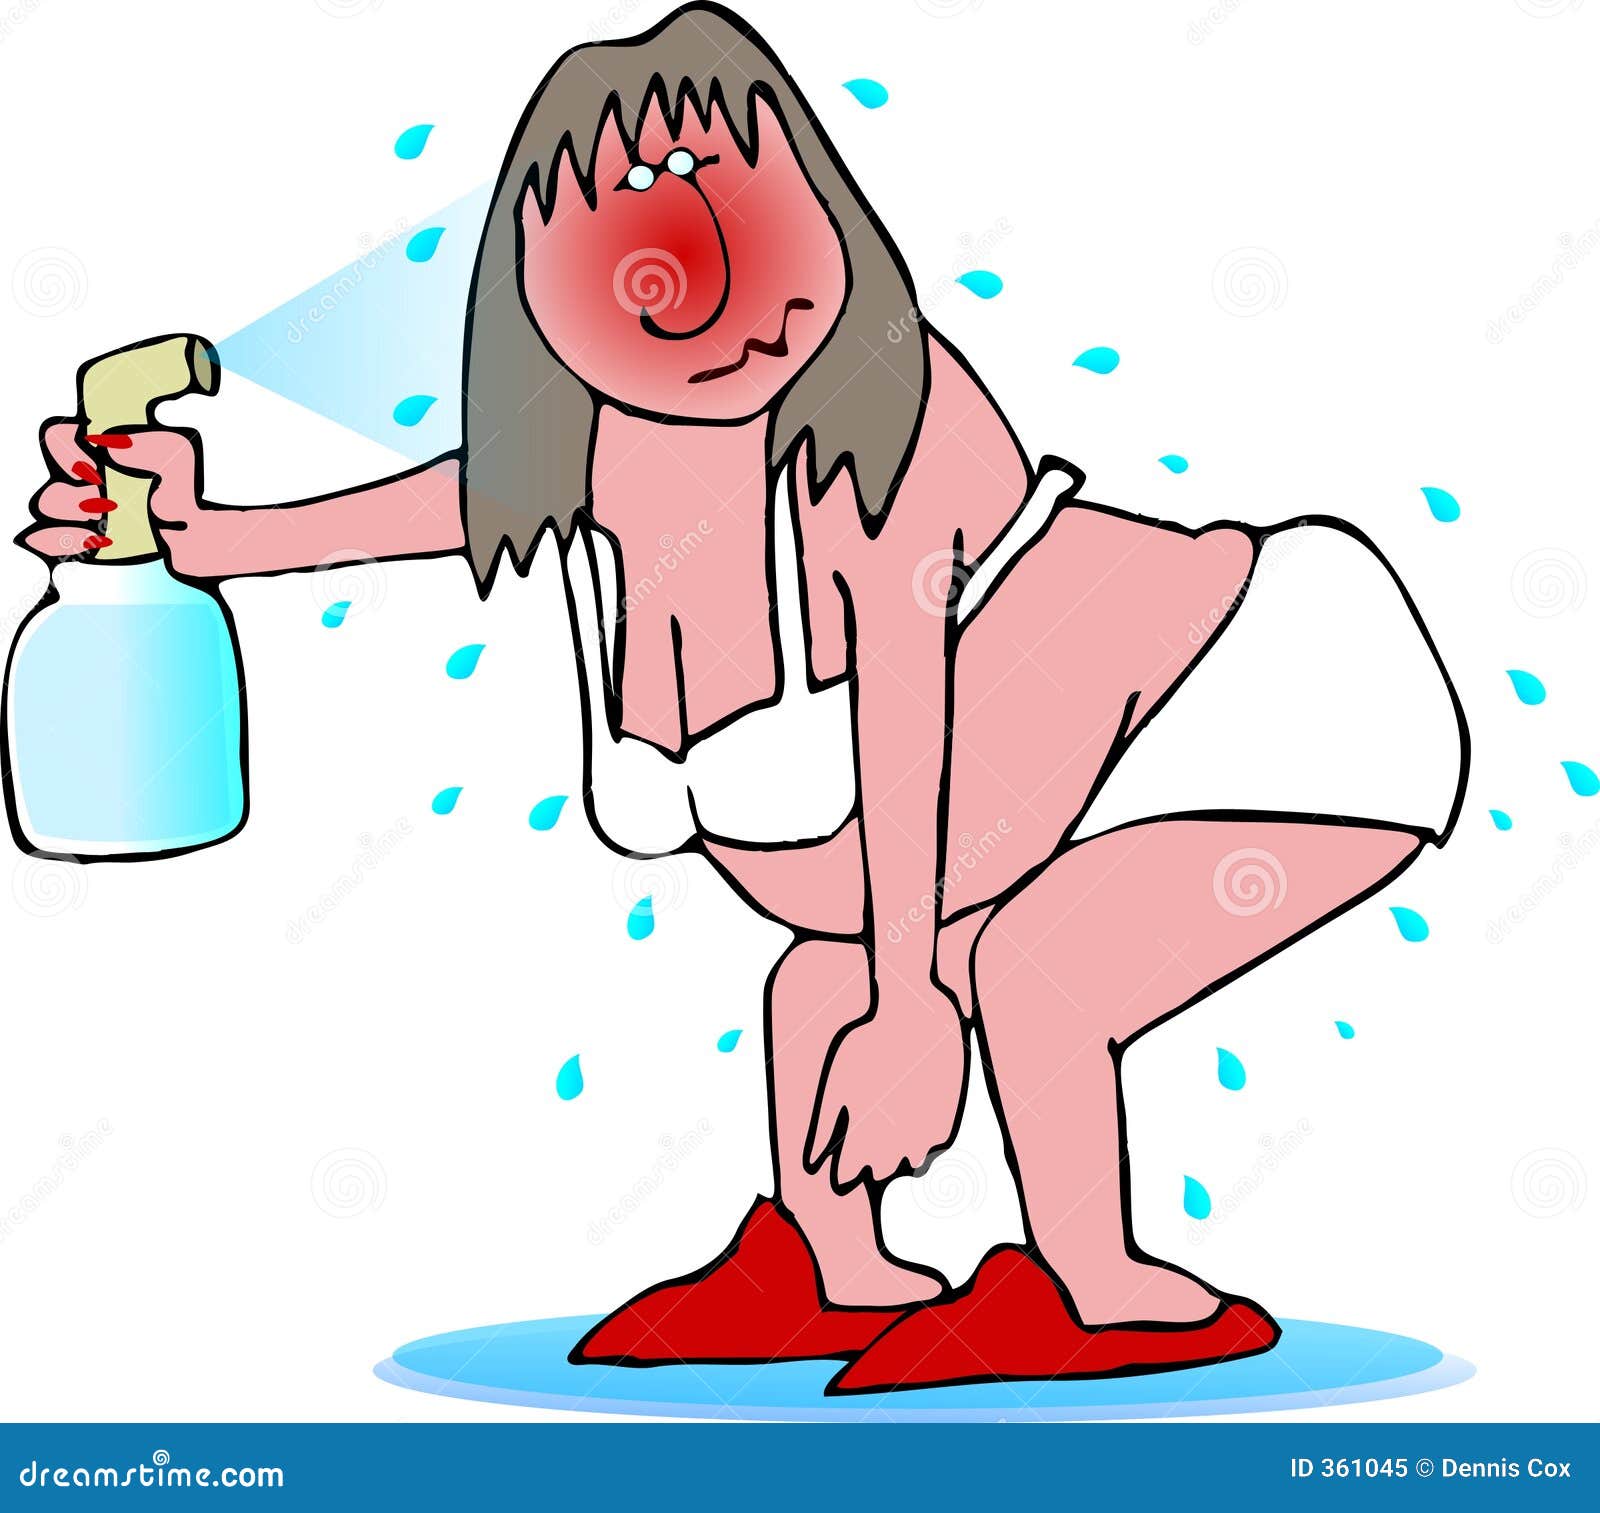 Не жаркий но душный. Карикатуры про жару. Жара карикатура. Женщине жарко. Жара смешные рисунки.